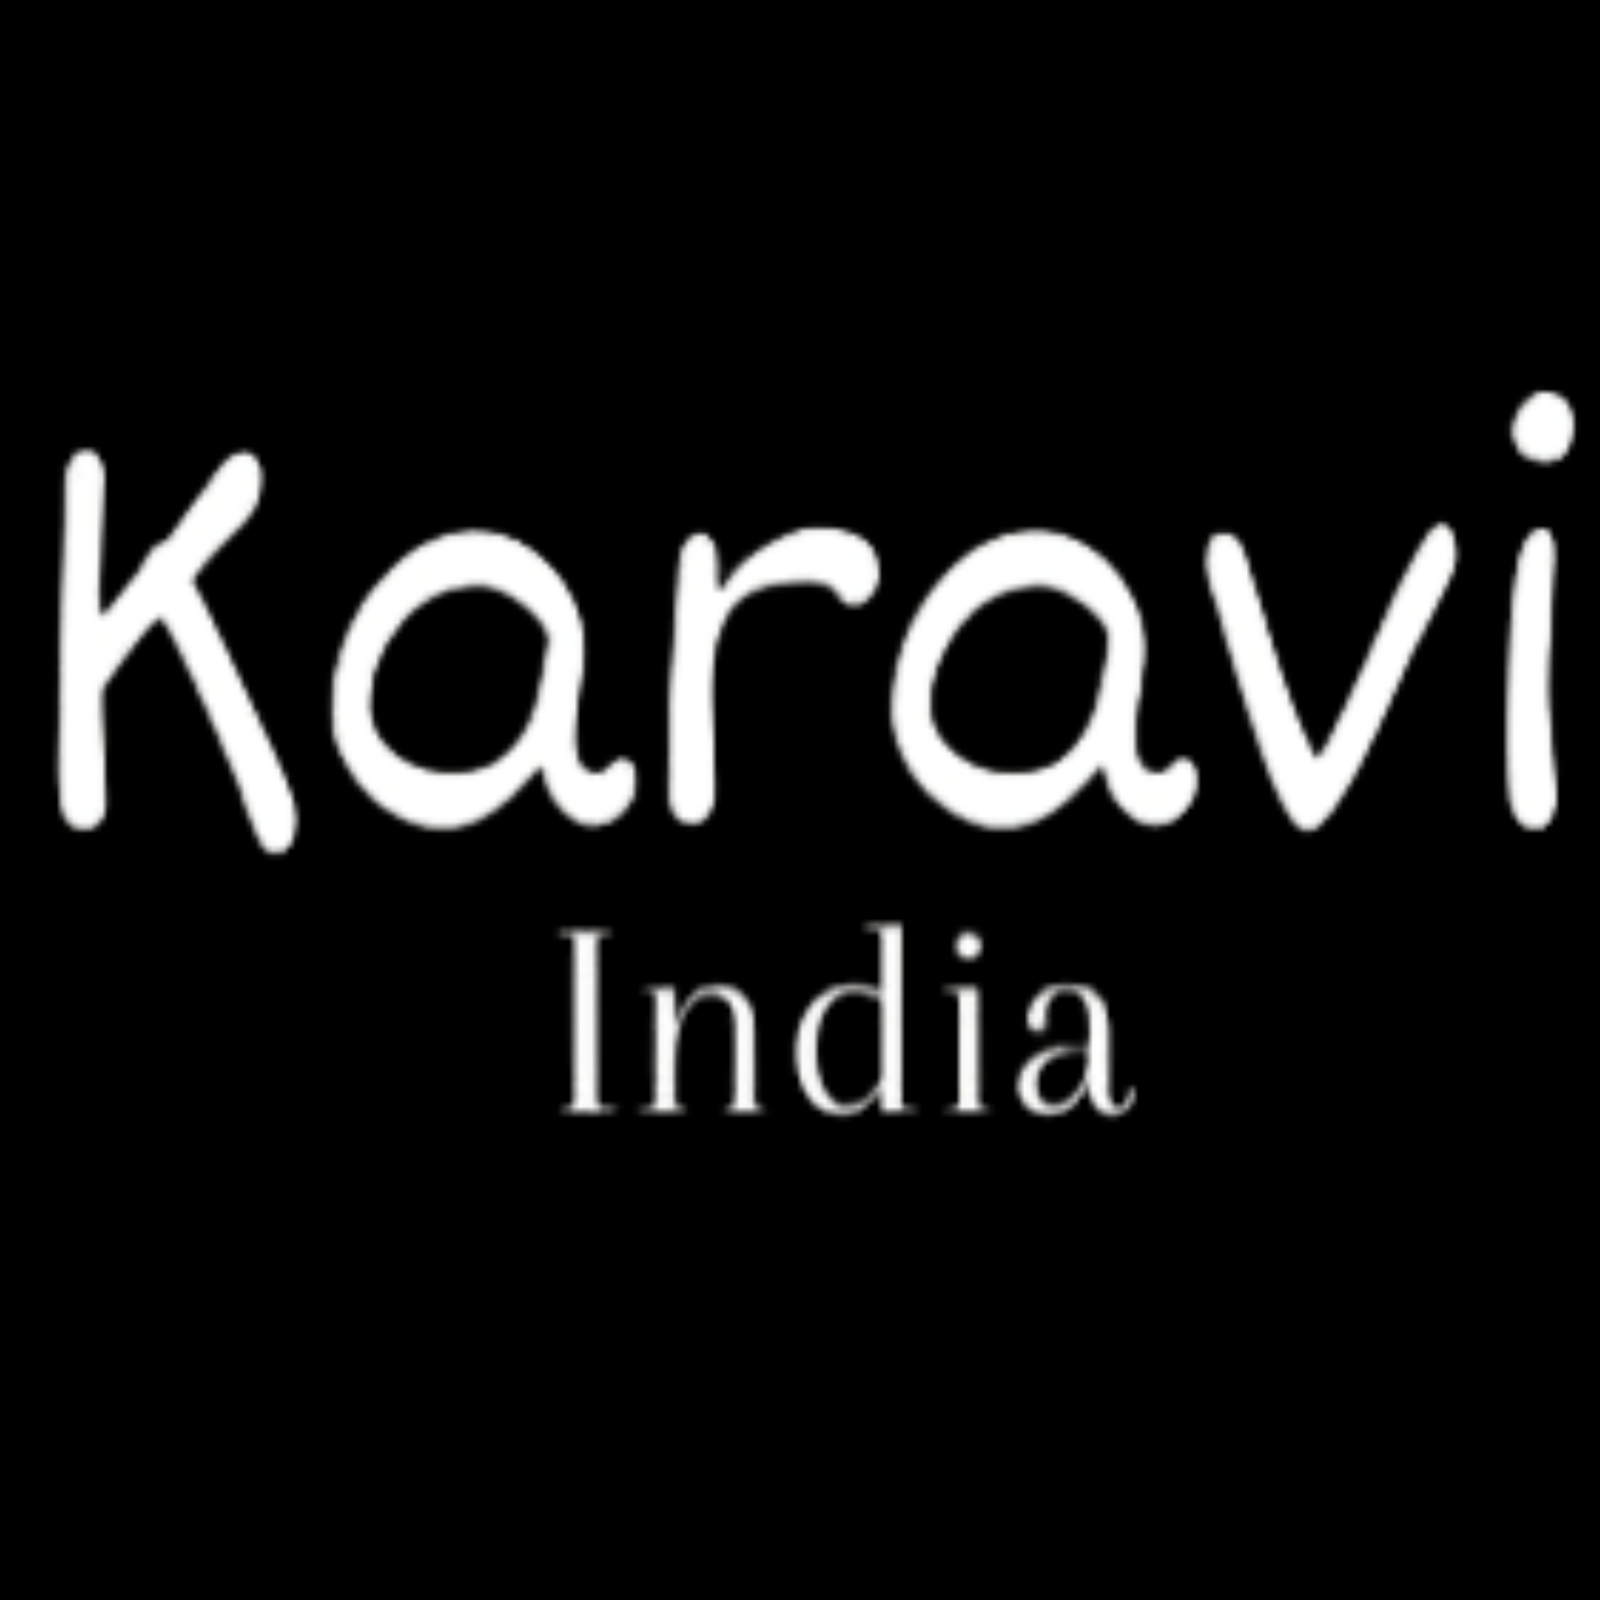 karavi Logo (2)